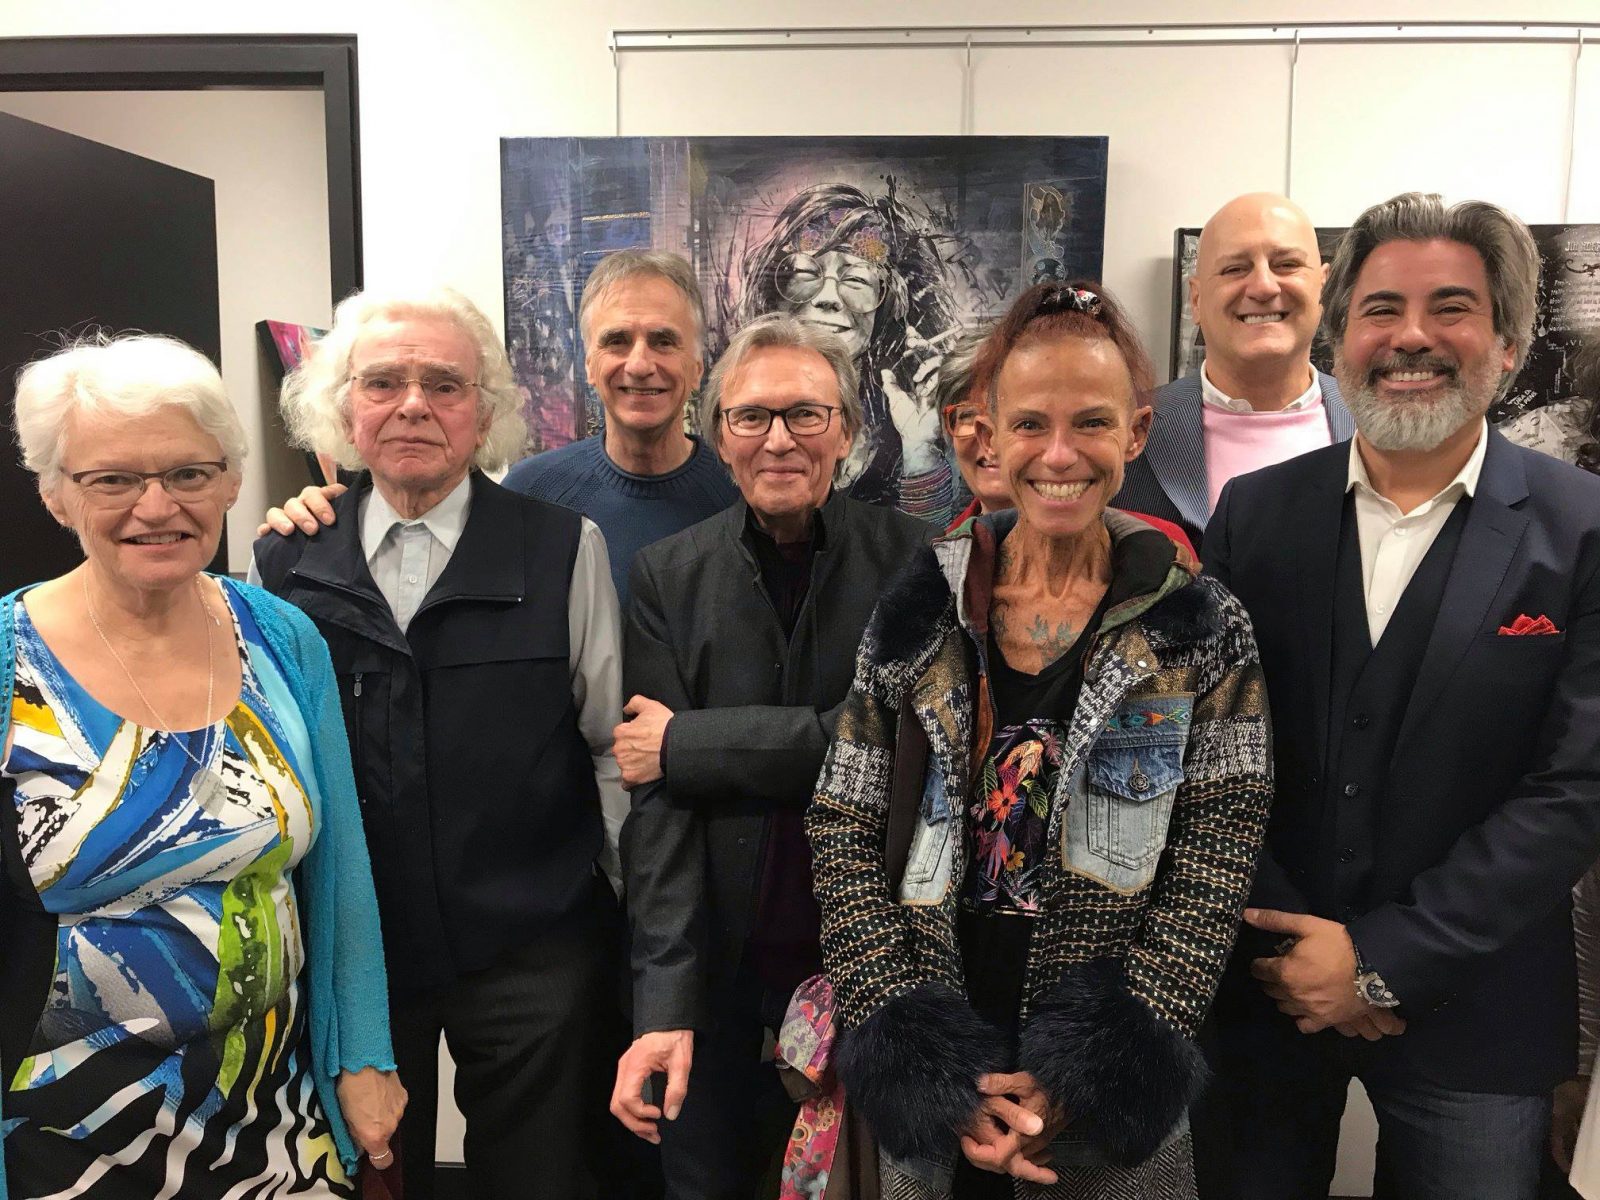 Le ministre du Patrimoine canadien rencontre les artistes d’ici à l’invitation du député Michel Picard